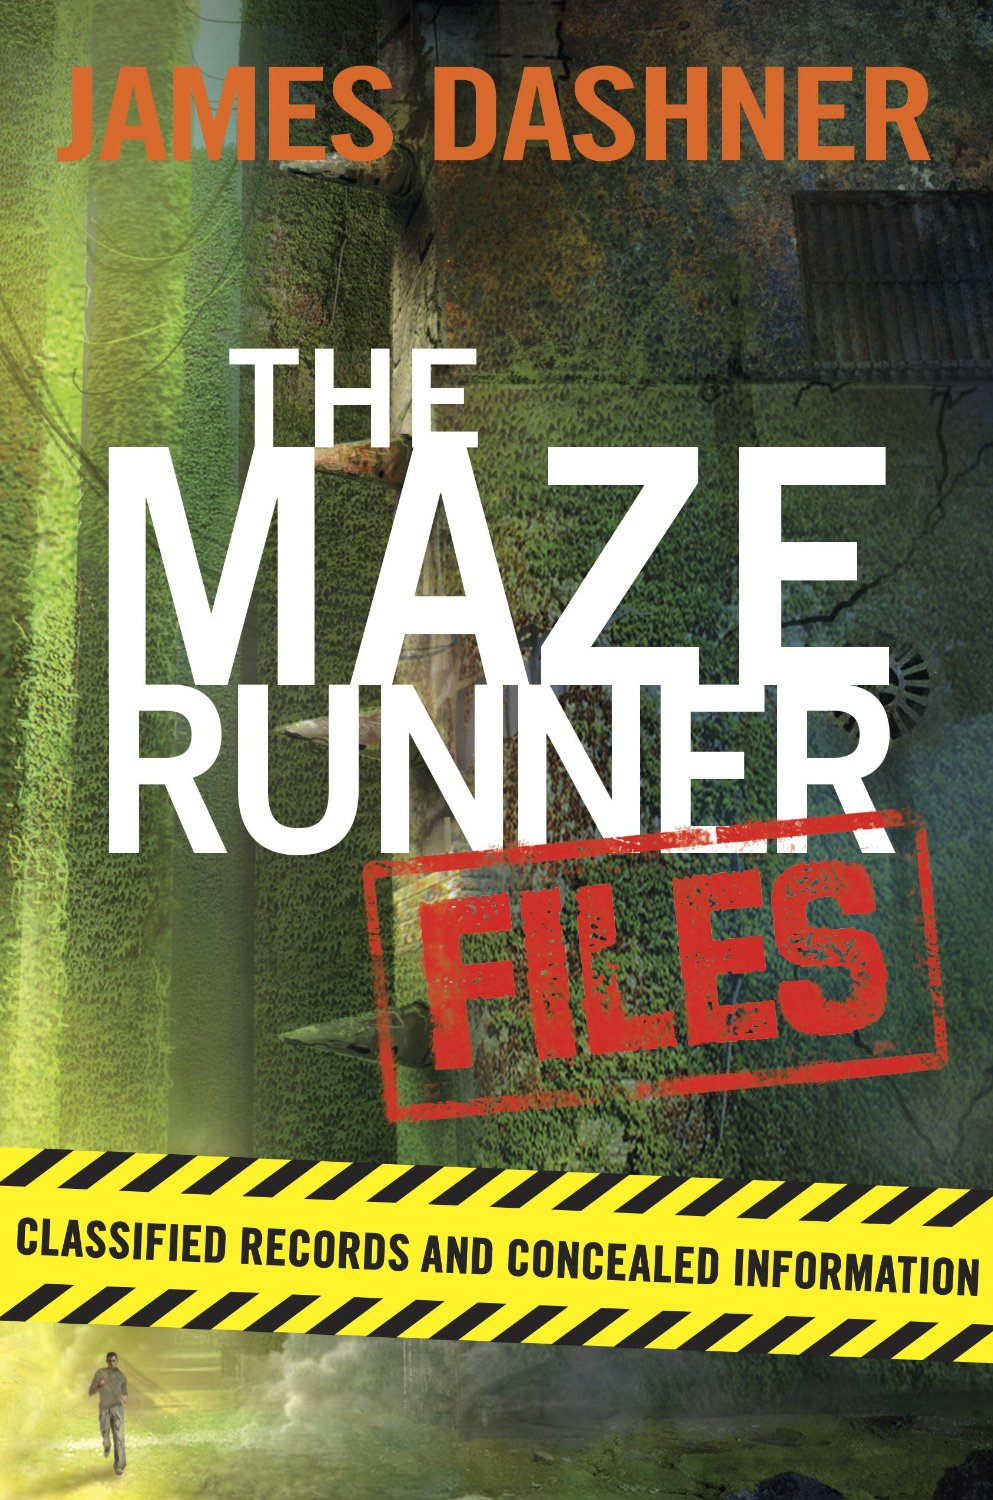 maze runner book